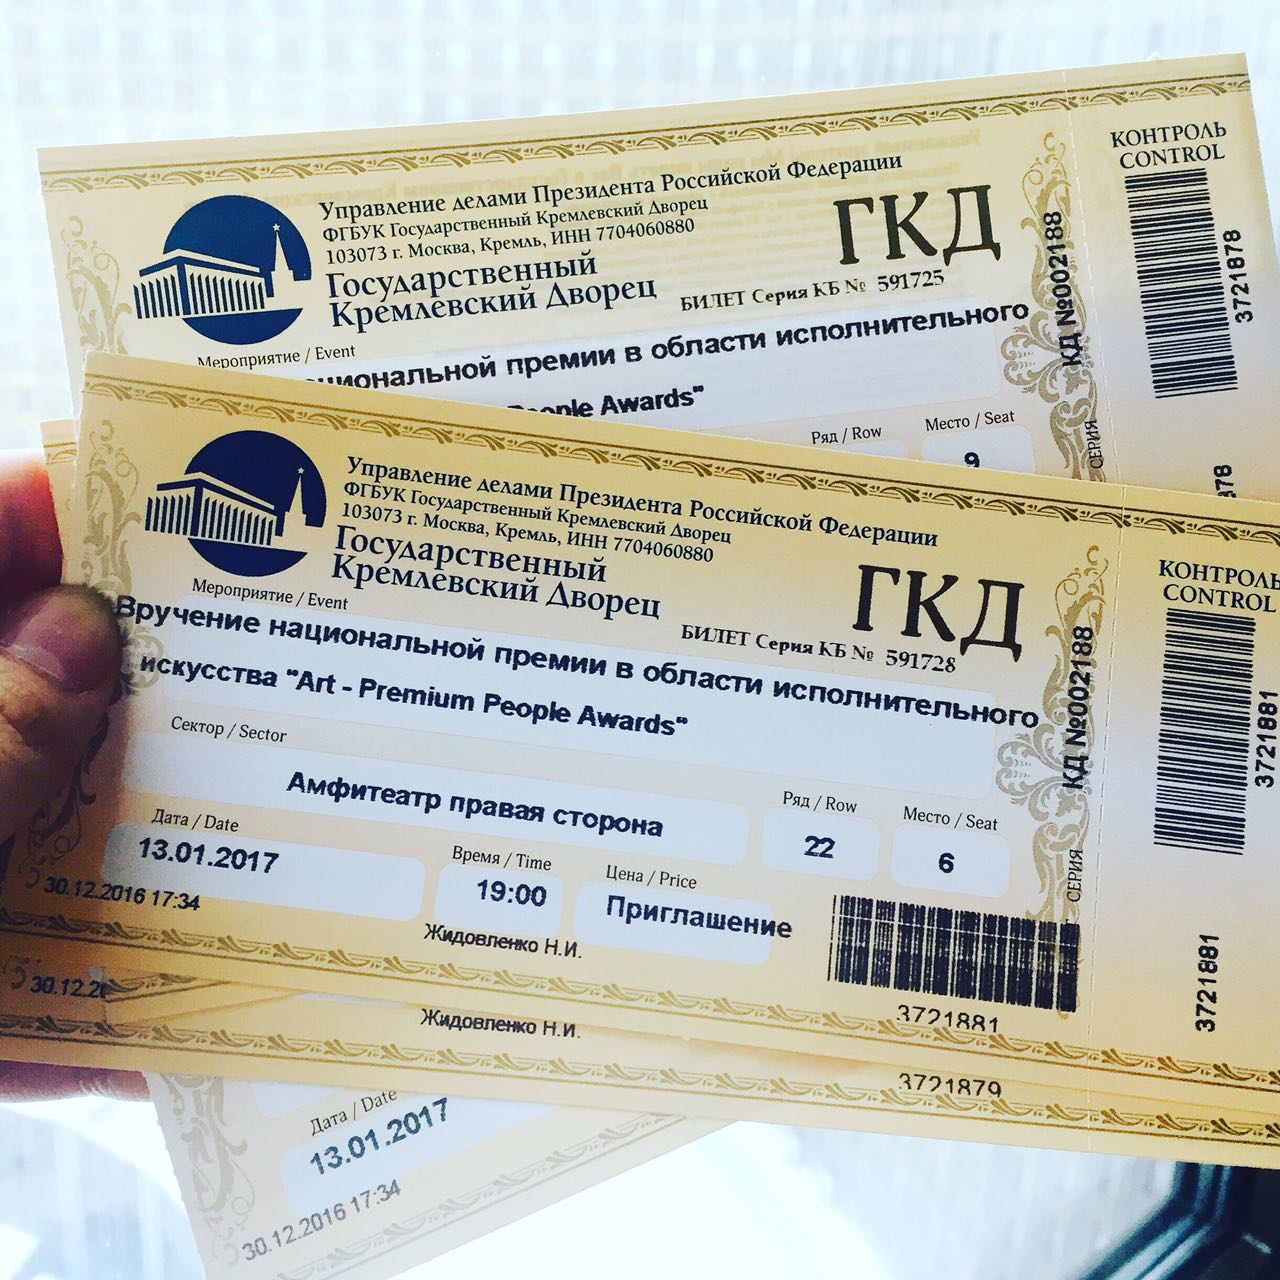 Билет на концерт. Кремлевский дворец билеты. ГКД билеты. Кремль билеты купить концерт королевой